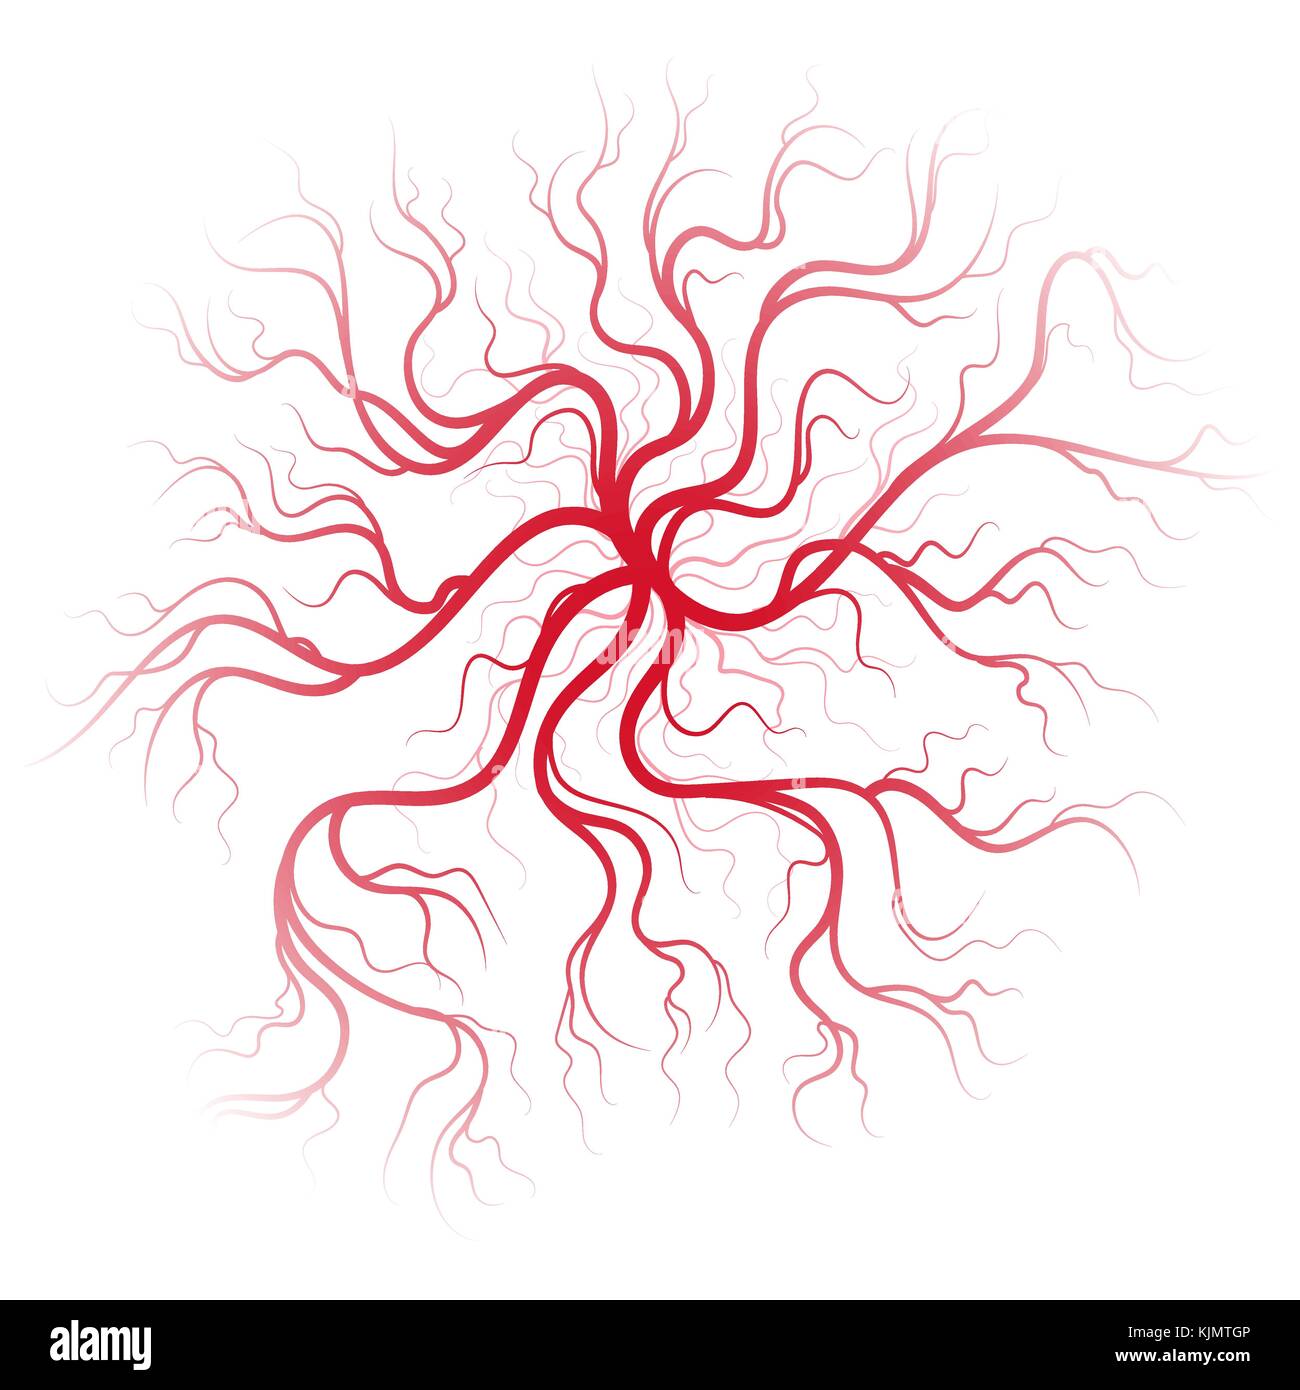 Human blood veins Stock Vector